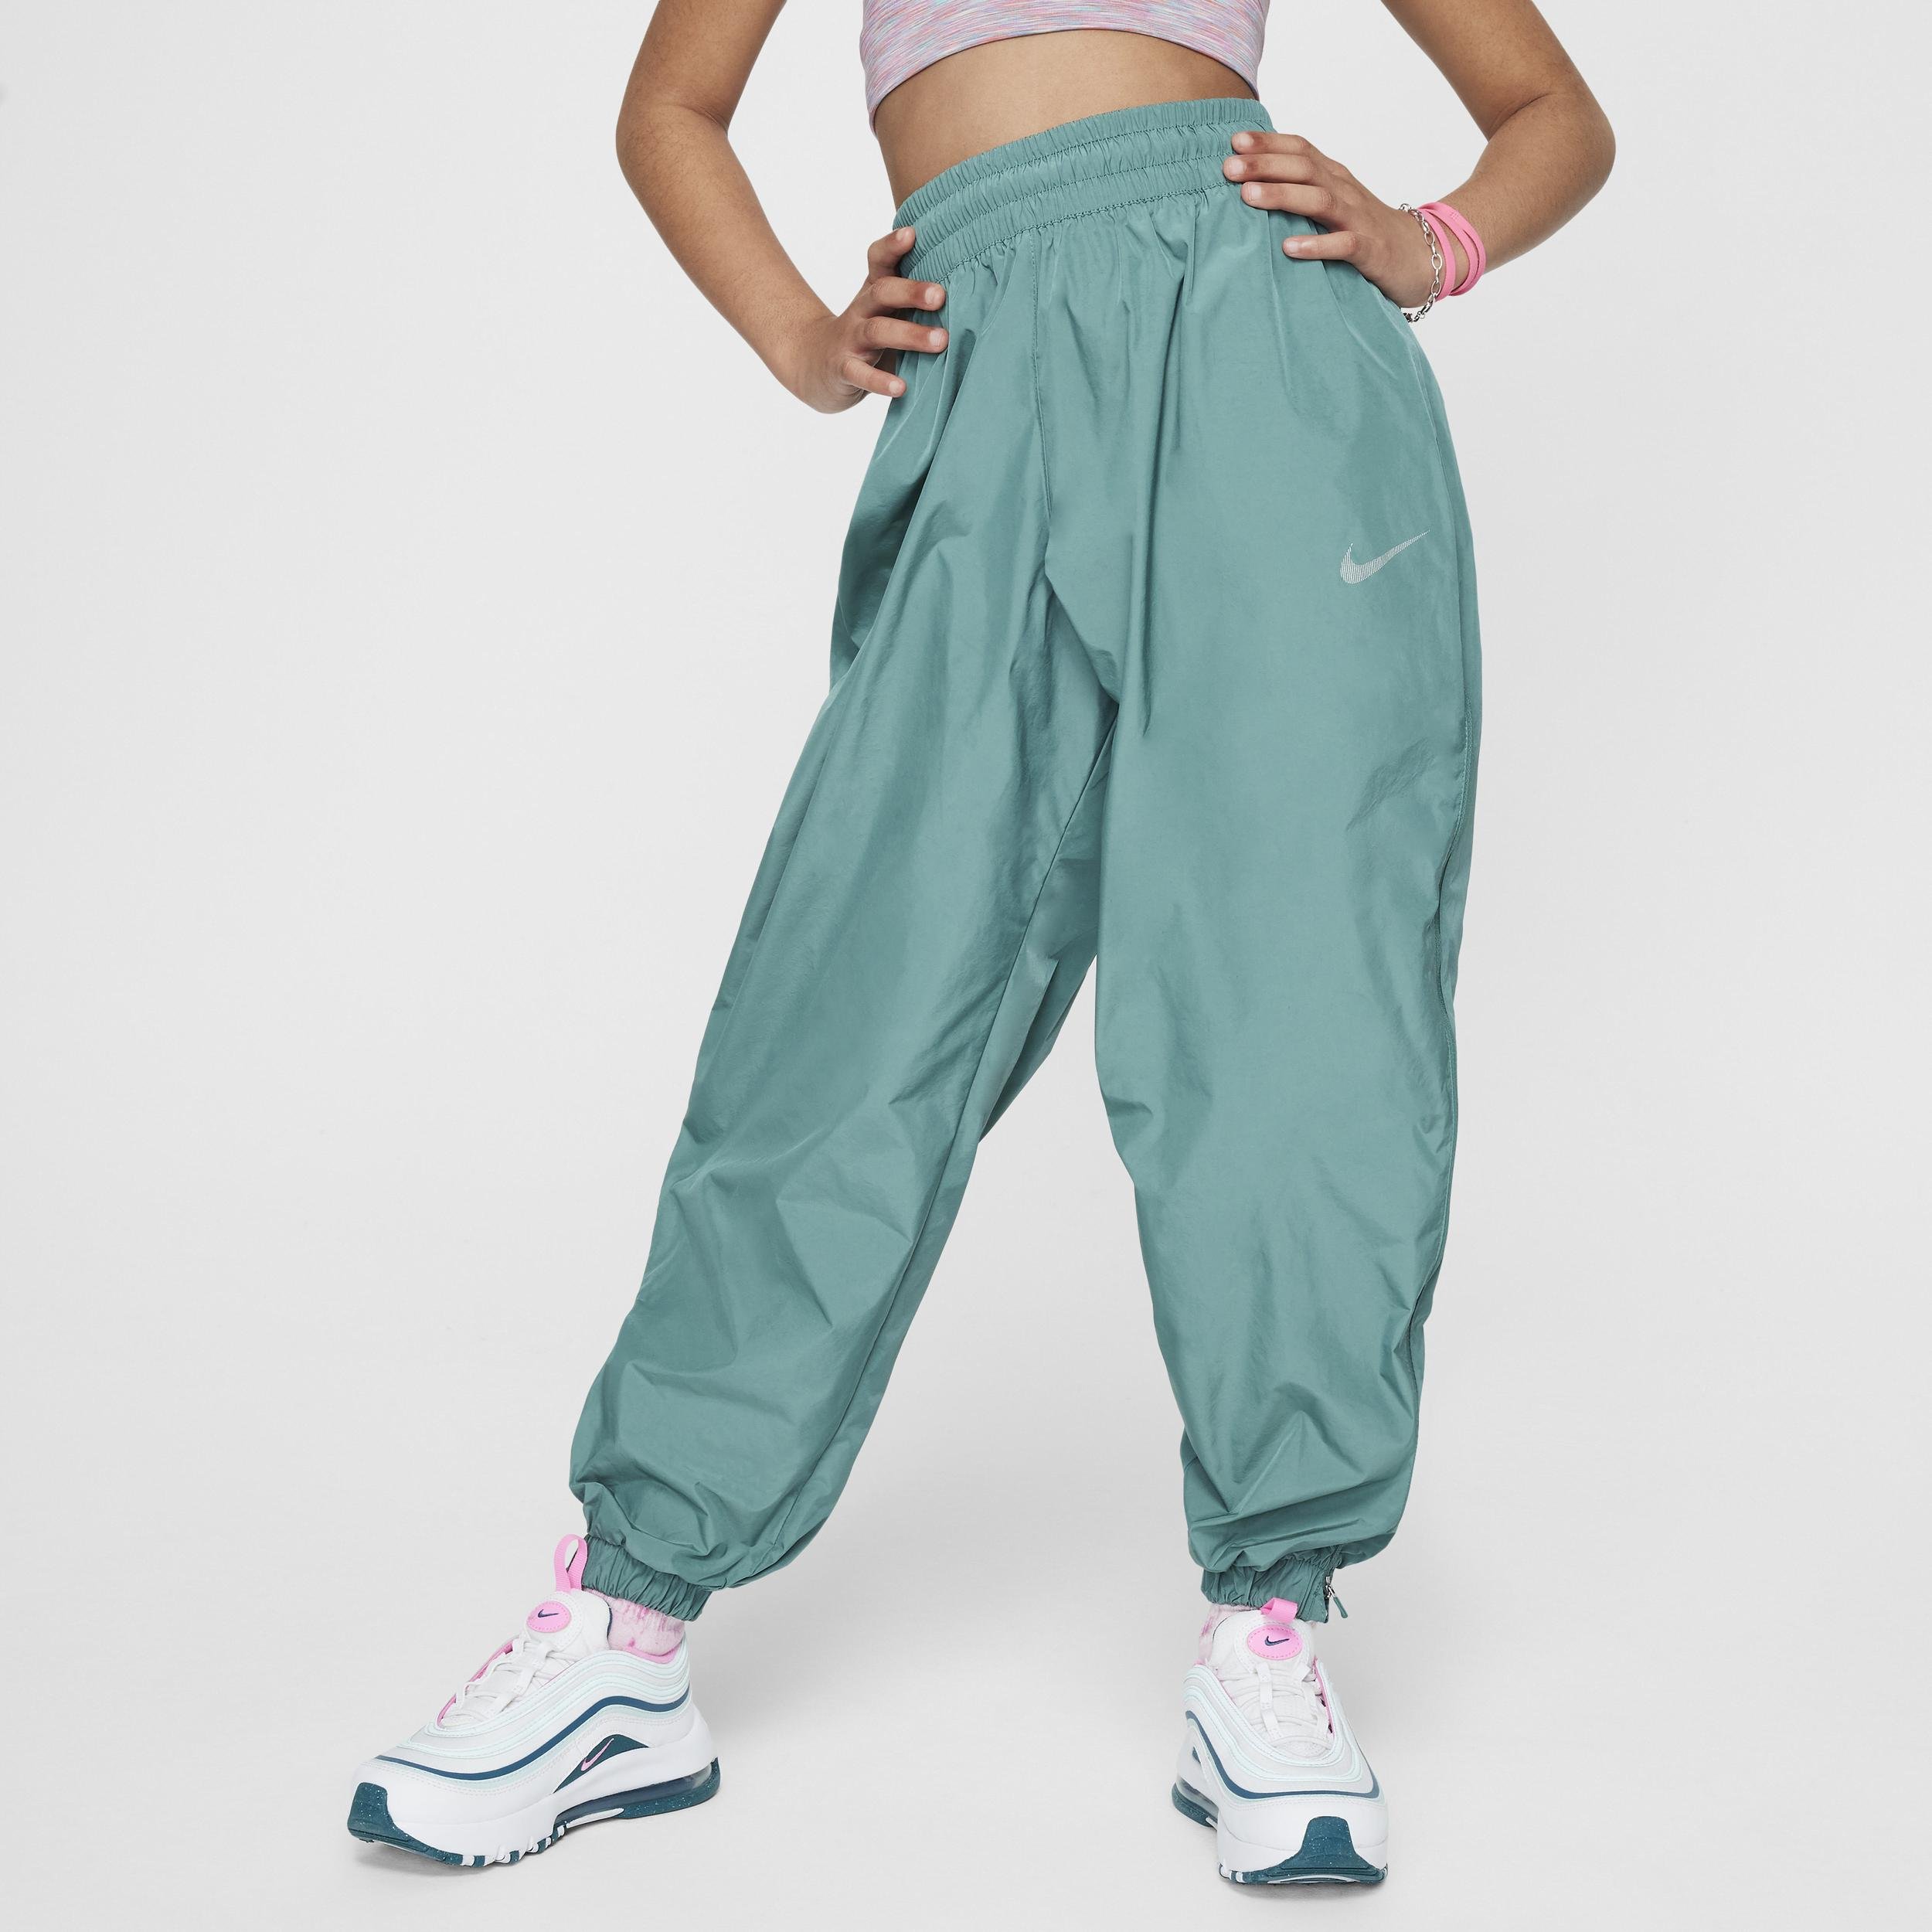 Nike Sportswear Big Kids' (Girls') Woven Pants by NIKE